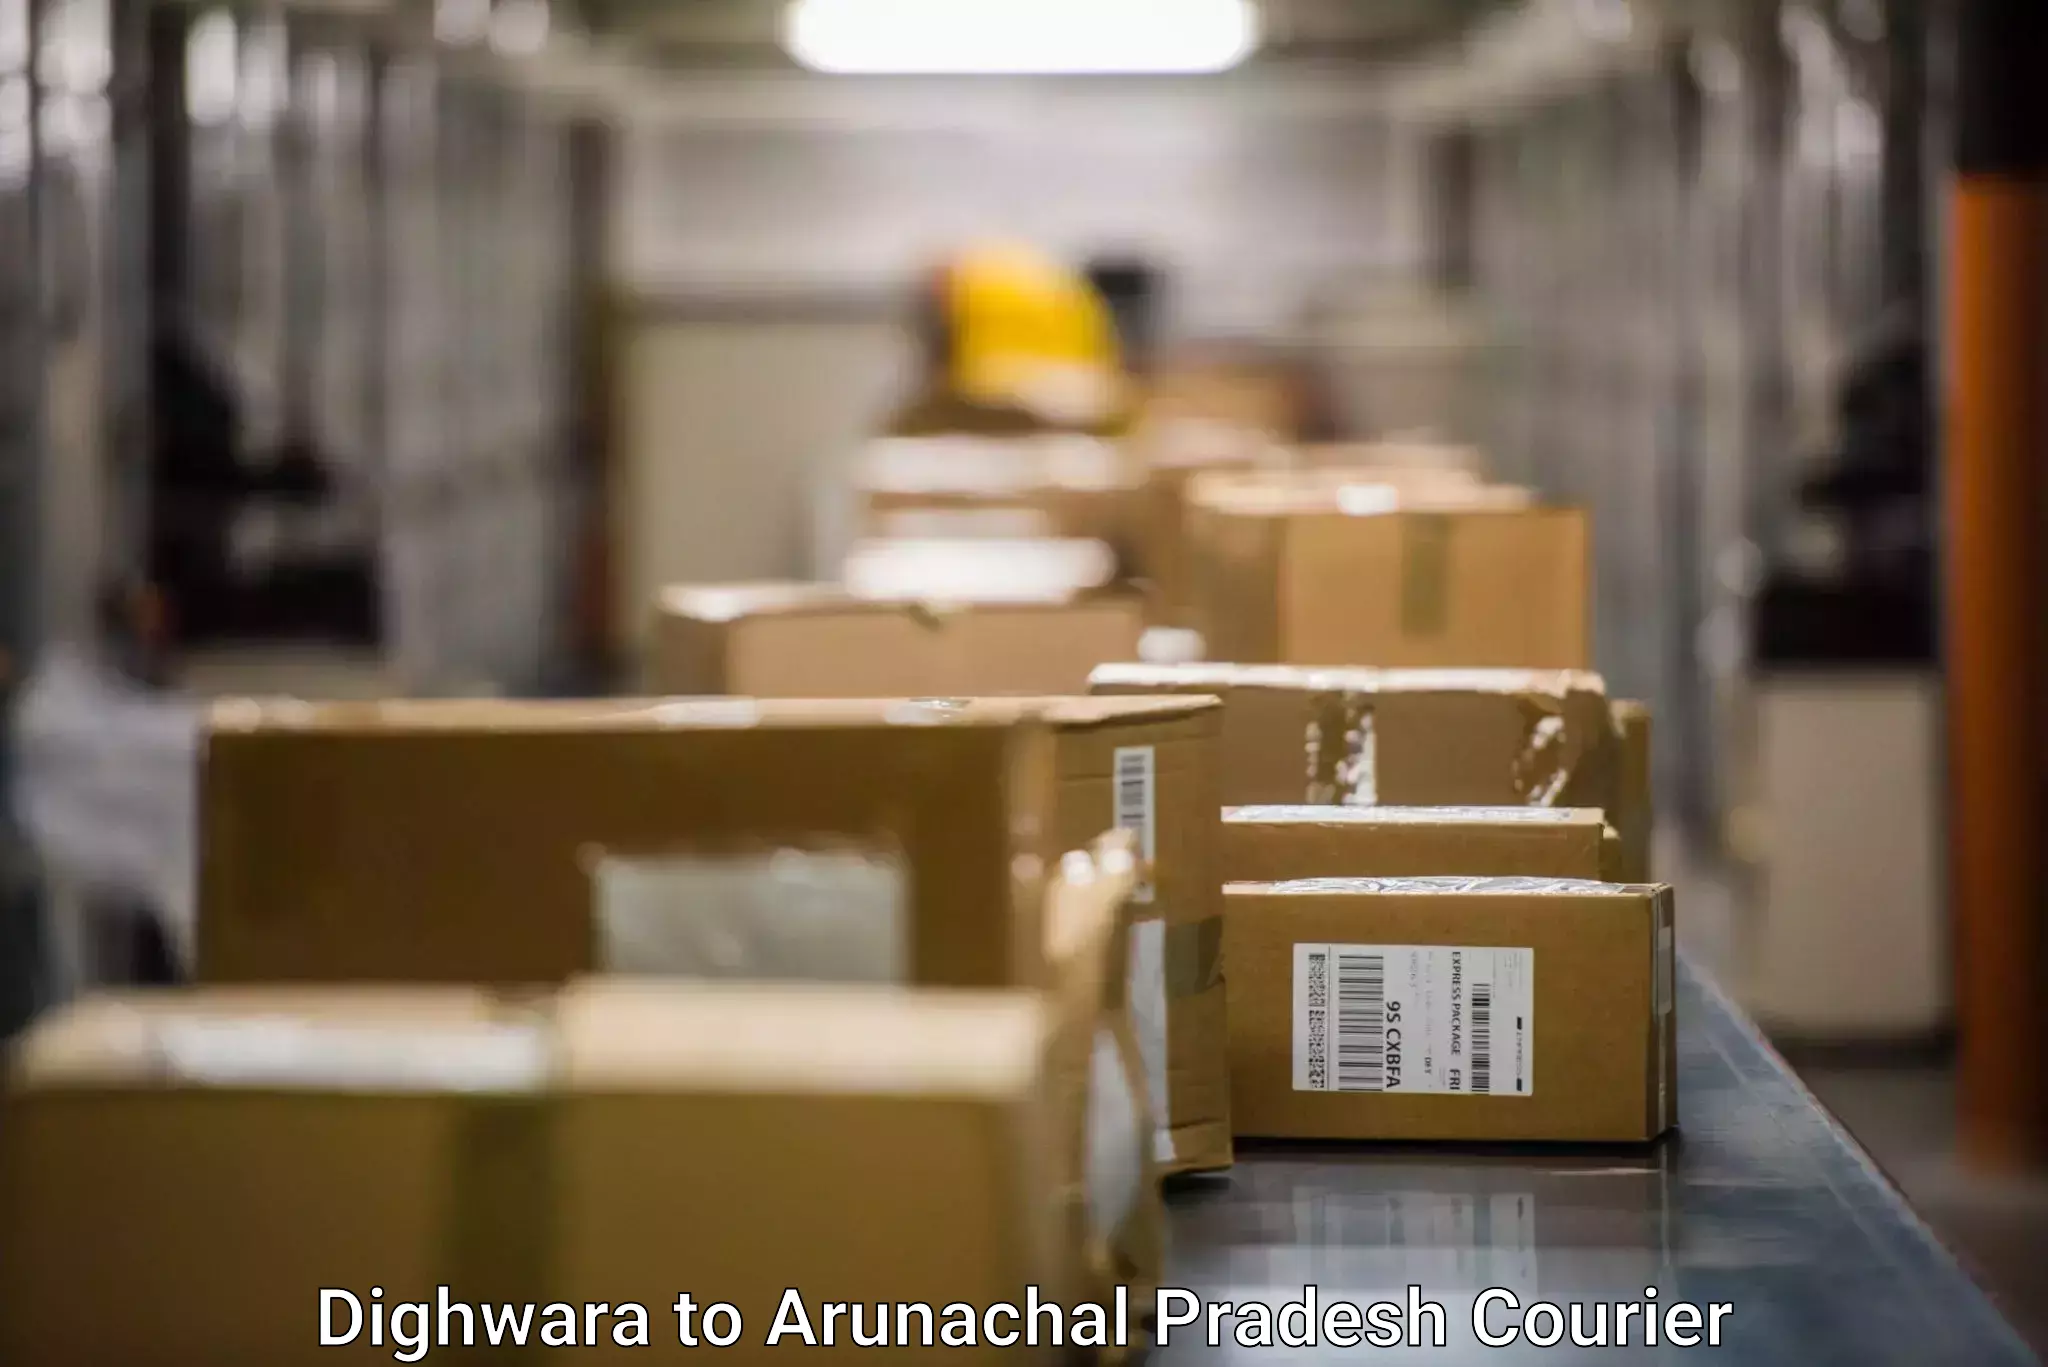 Personal courier services Dighwara to Arunachal Pradesh